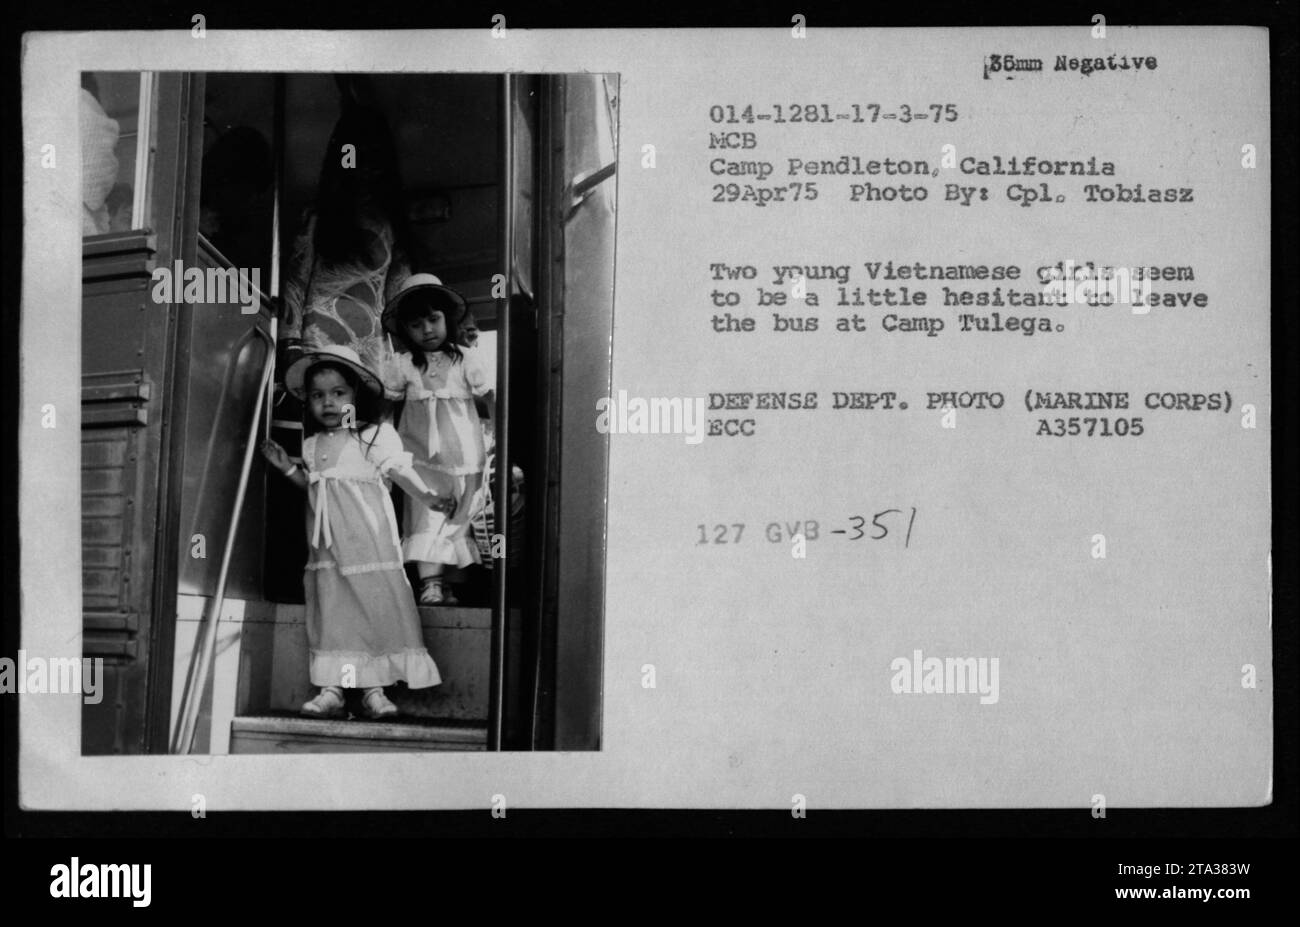 Marine Corps base (MCB) Camp Pendleton, California, 29 aprile 1975: In questa fotografia del Dipartimento della difesa (corpo dei Marines), due giovani ragazze vietnamite sembrano preoccupate di uscire dall'autobus quando arrivano a Camp Tulega. Insieme ad altri rifugiati vietnamiti, sono visitati da Claudia Cardinale, Nguyen Cao Ky, Rosemary Clooney e Betty Ford. Foto Stock